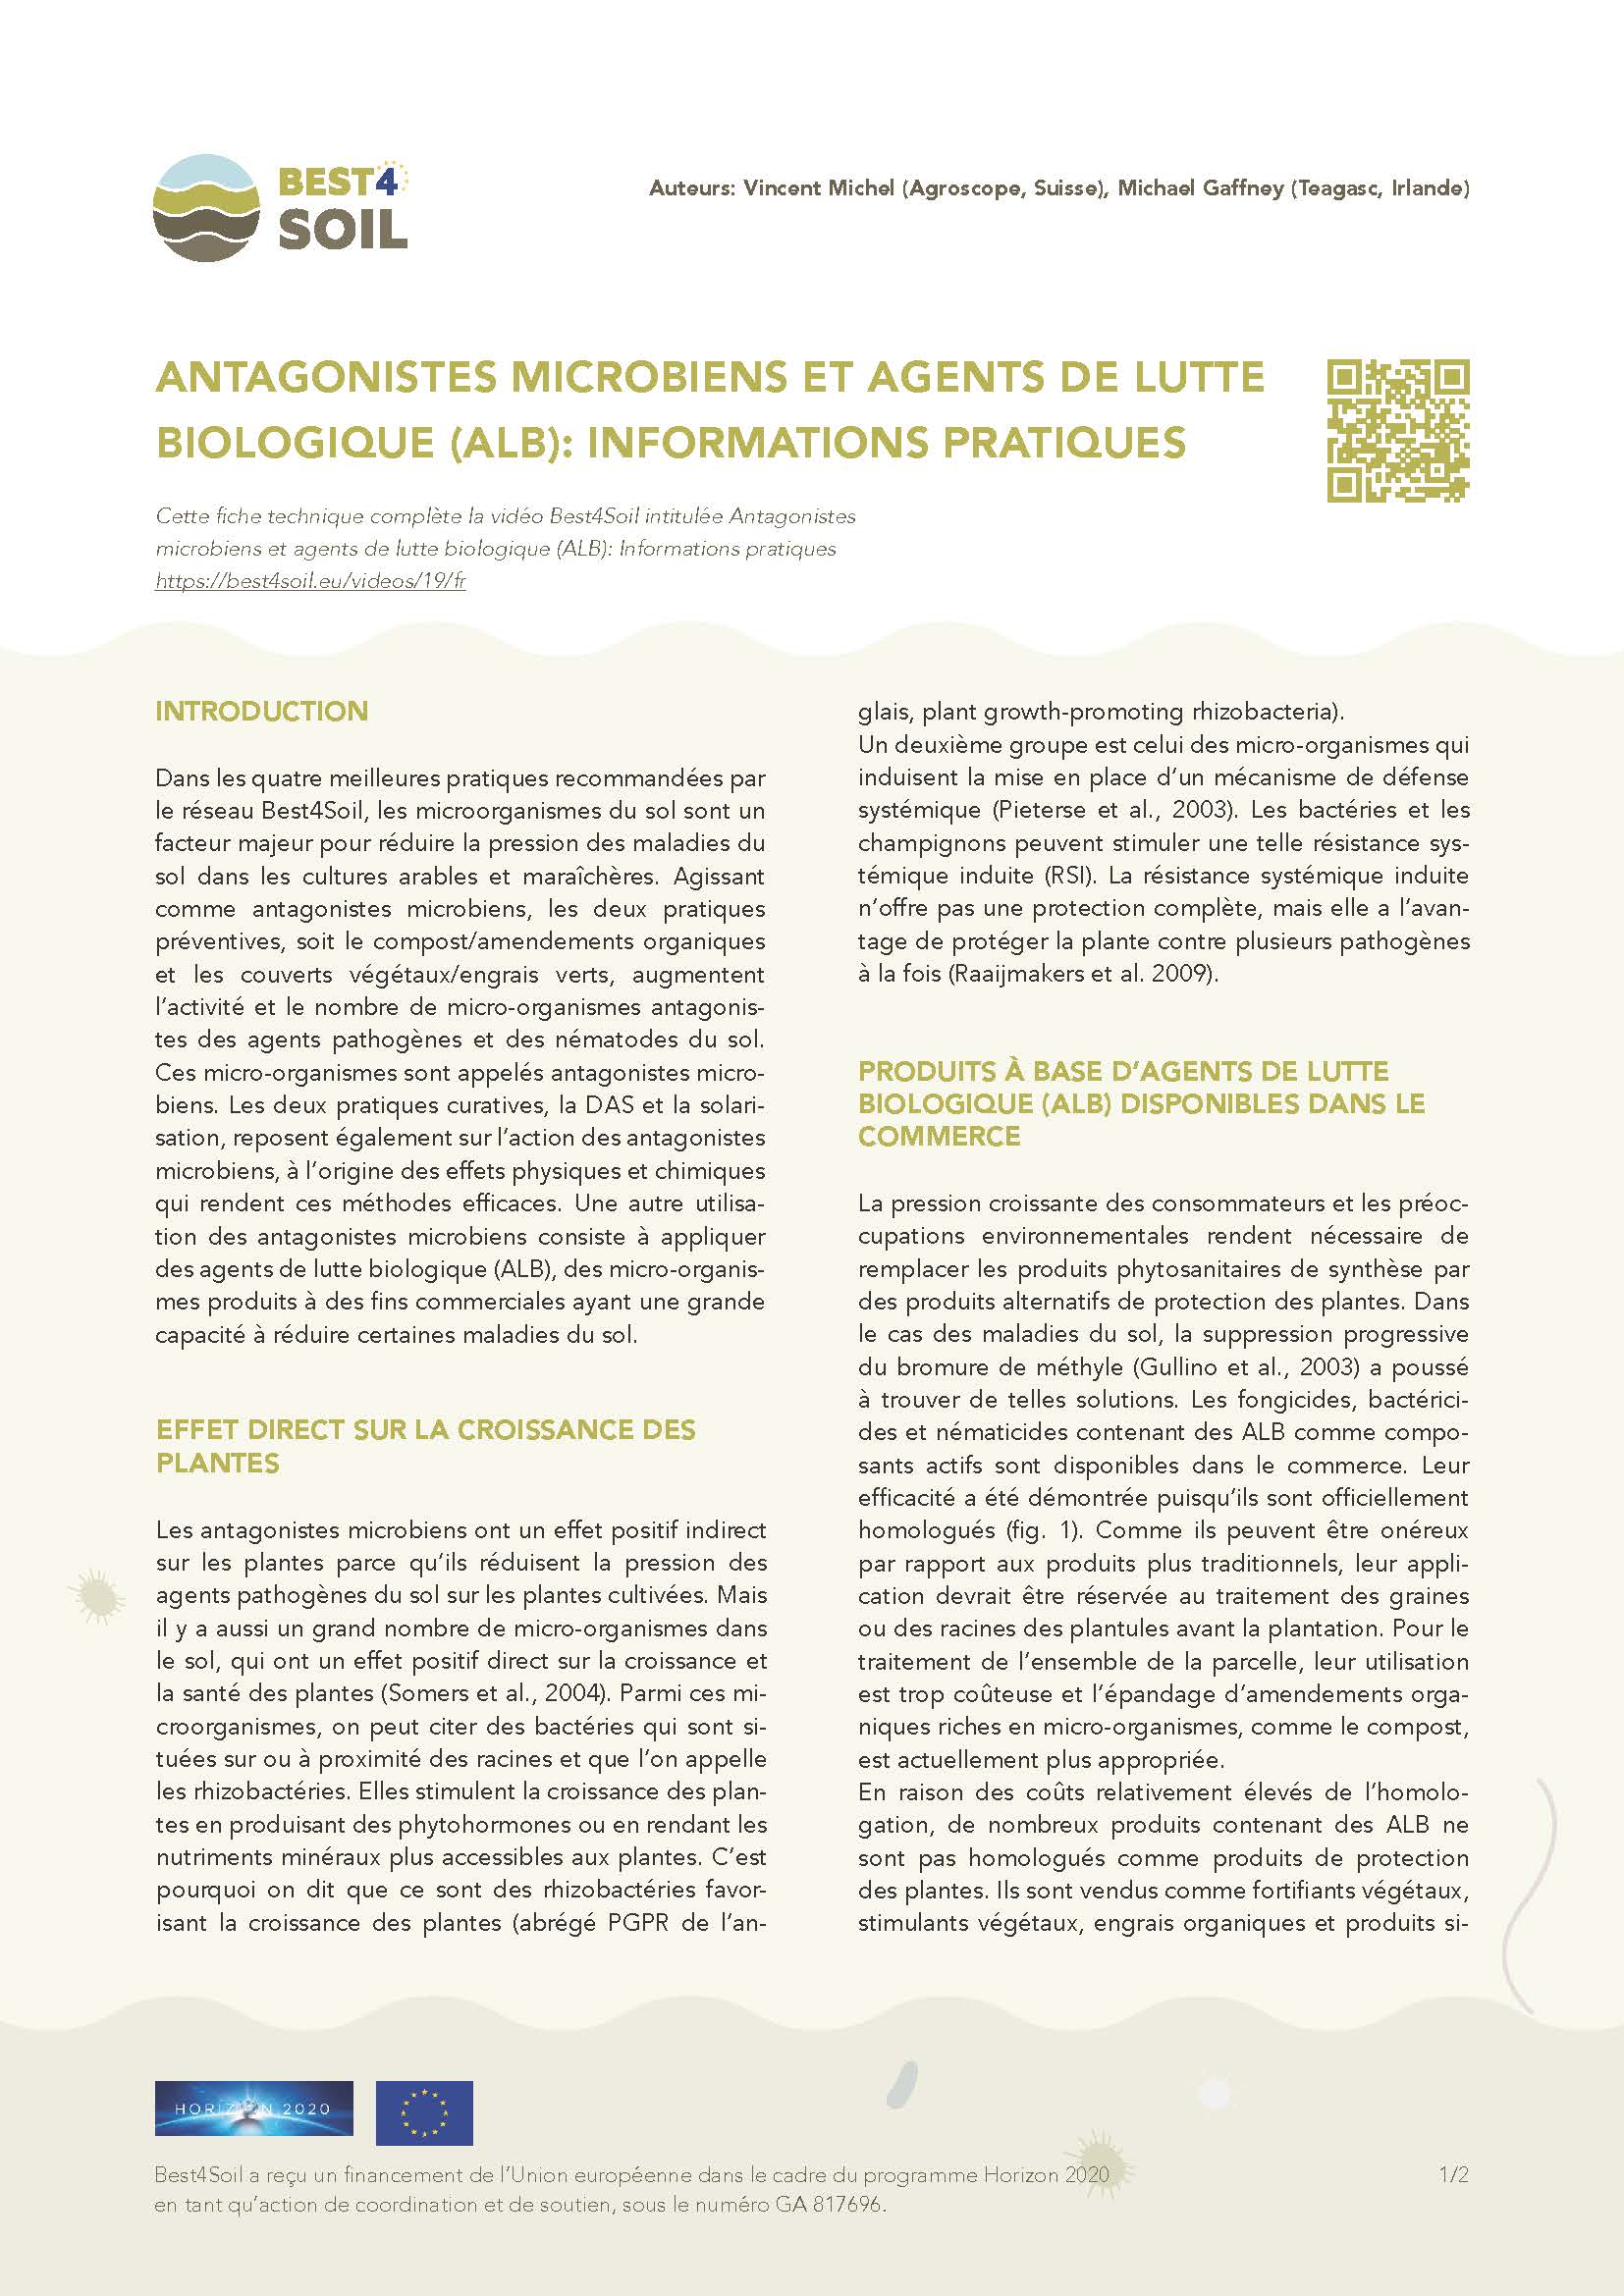 Antagonistes microbiens & bca : Informations pratiques (Best4Soil Factsheet)